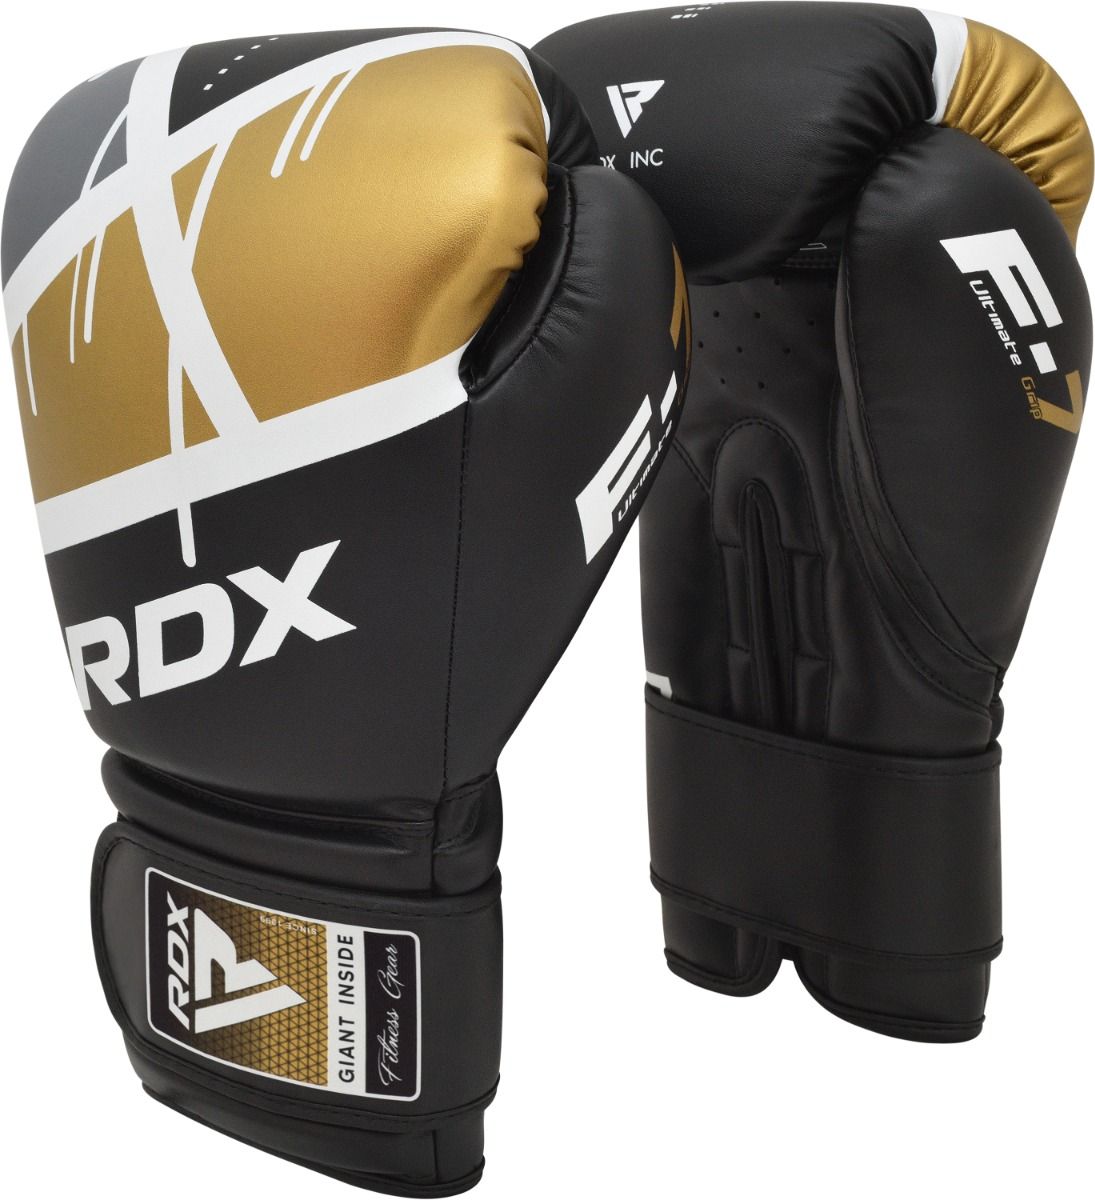  Боксерские перчатки RDX BGR F7 черные 